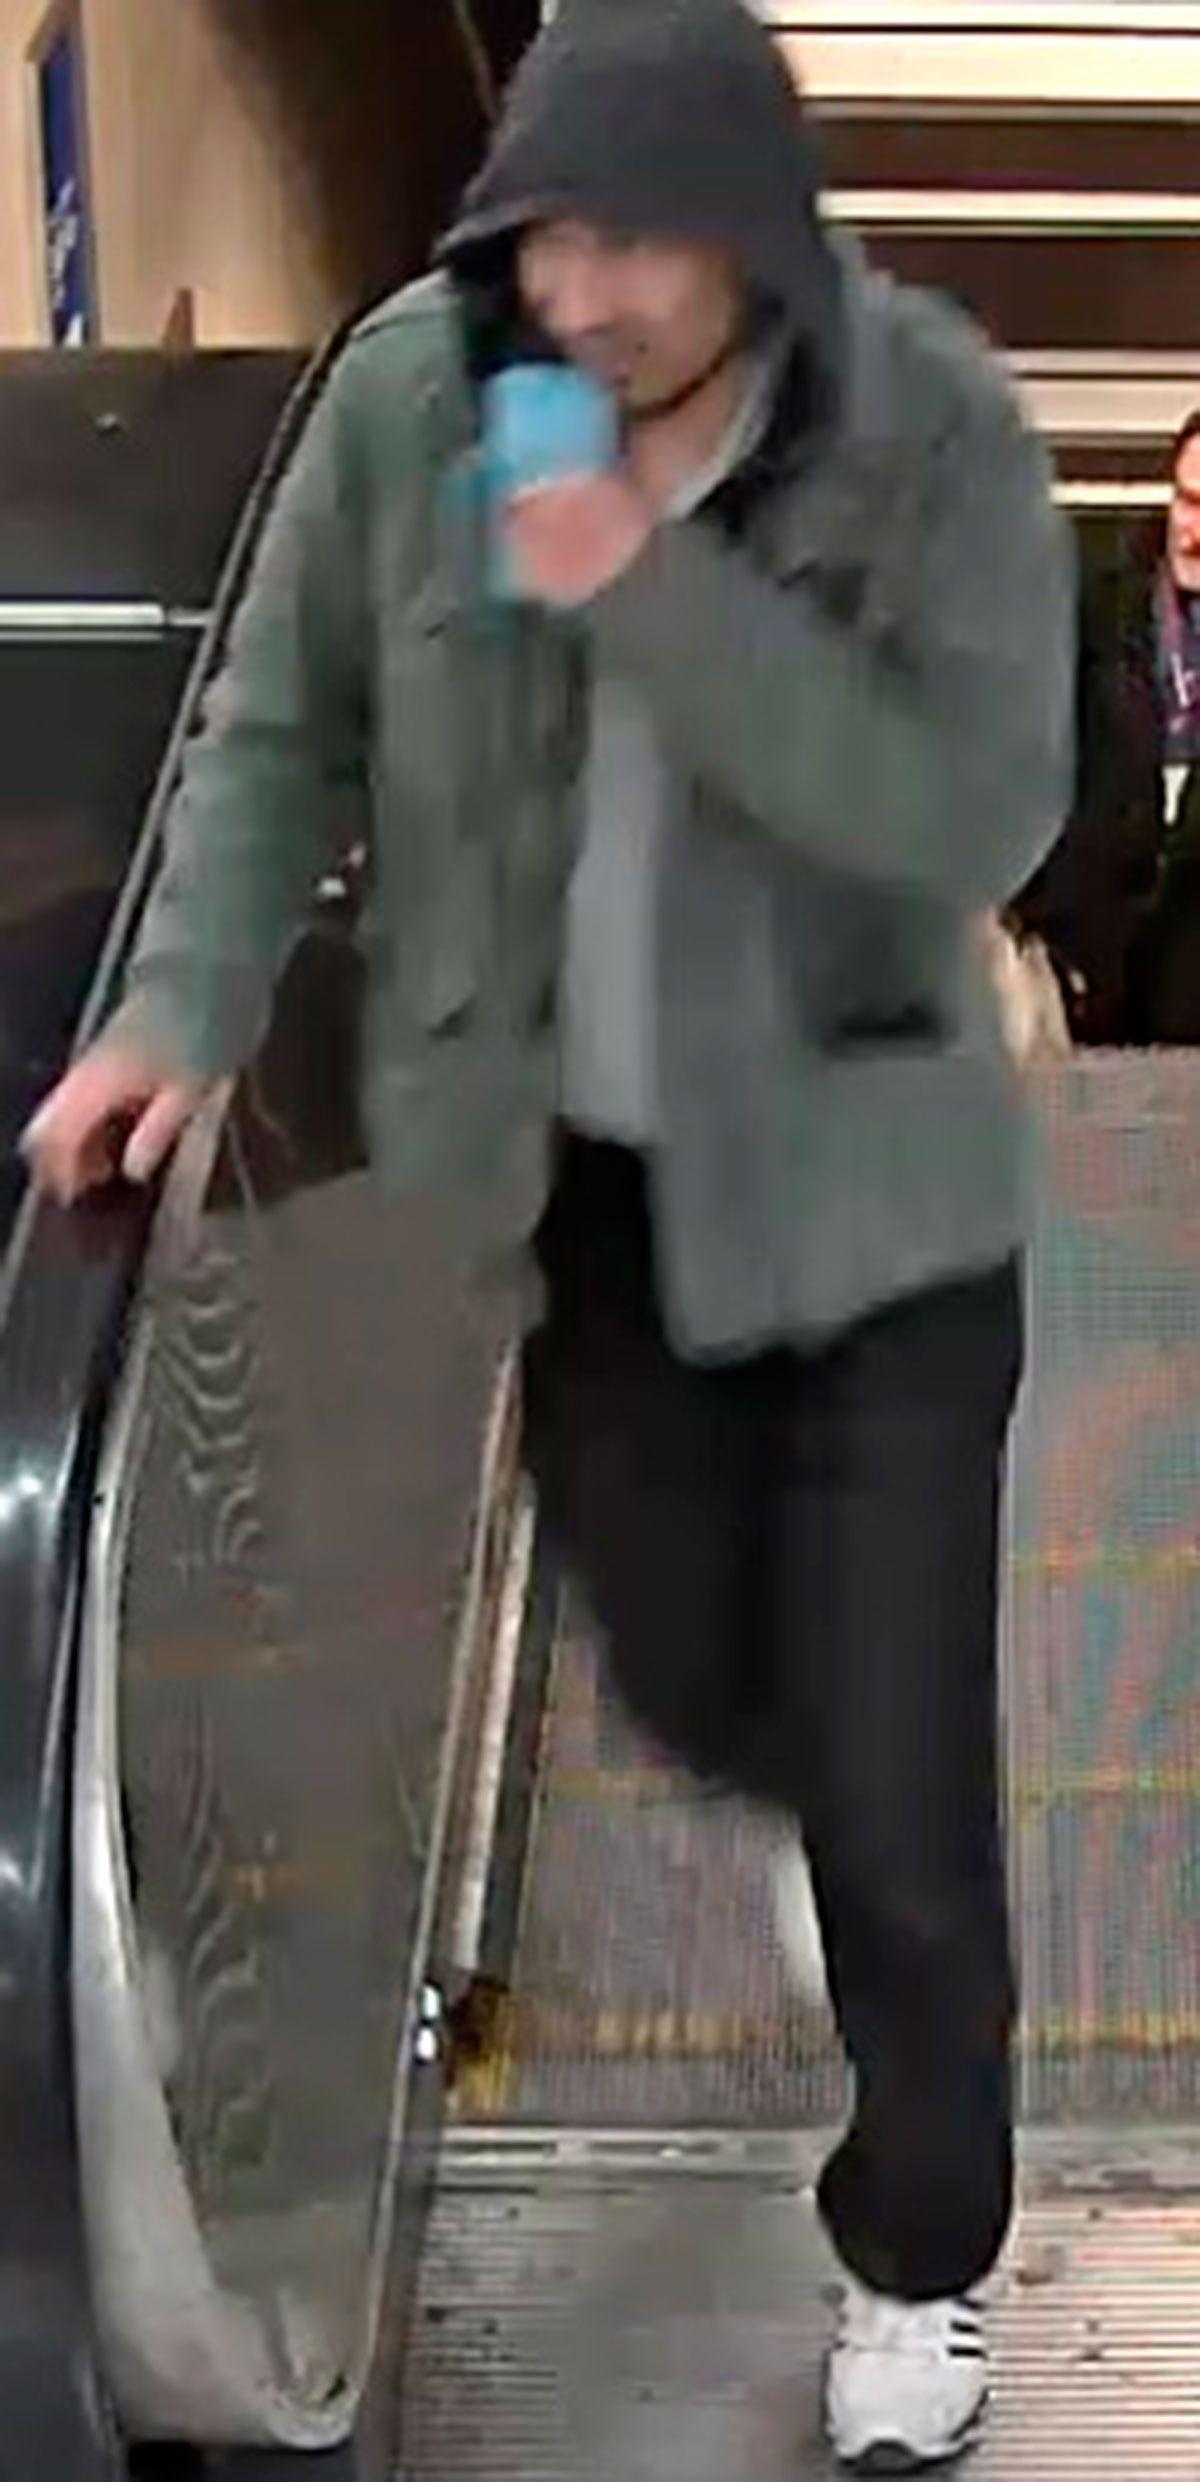 Polisens bild av den misstänkte i rulltrappan.